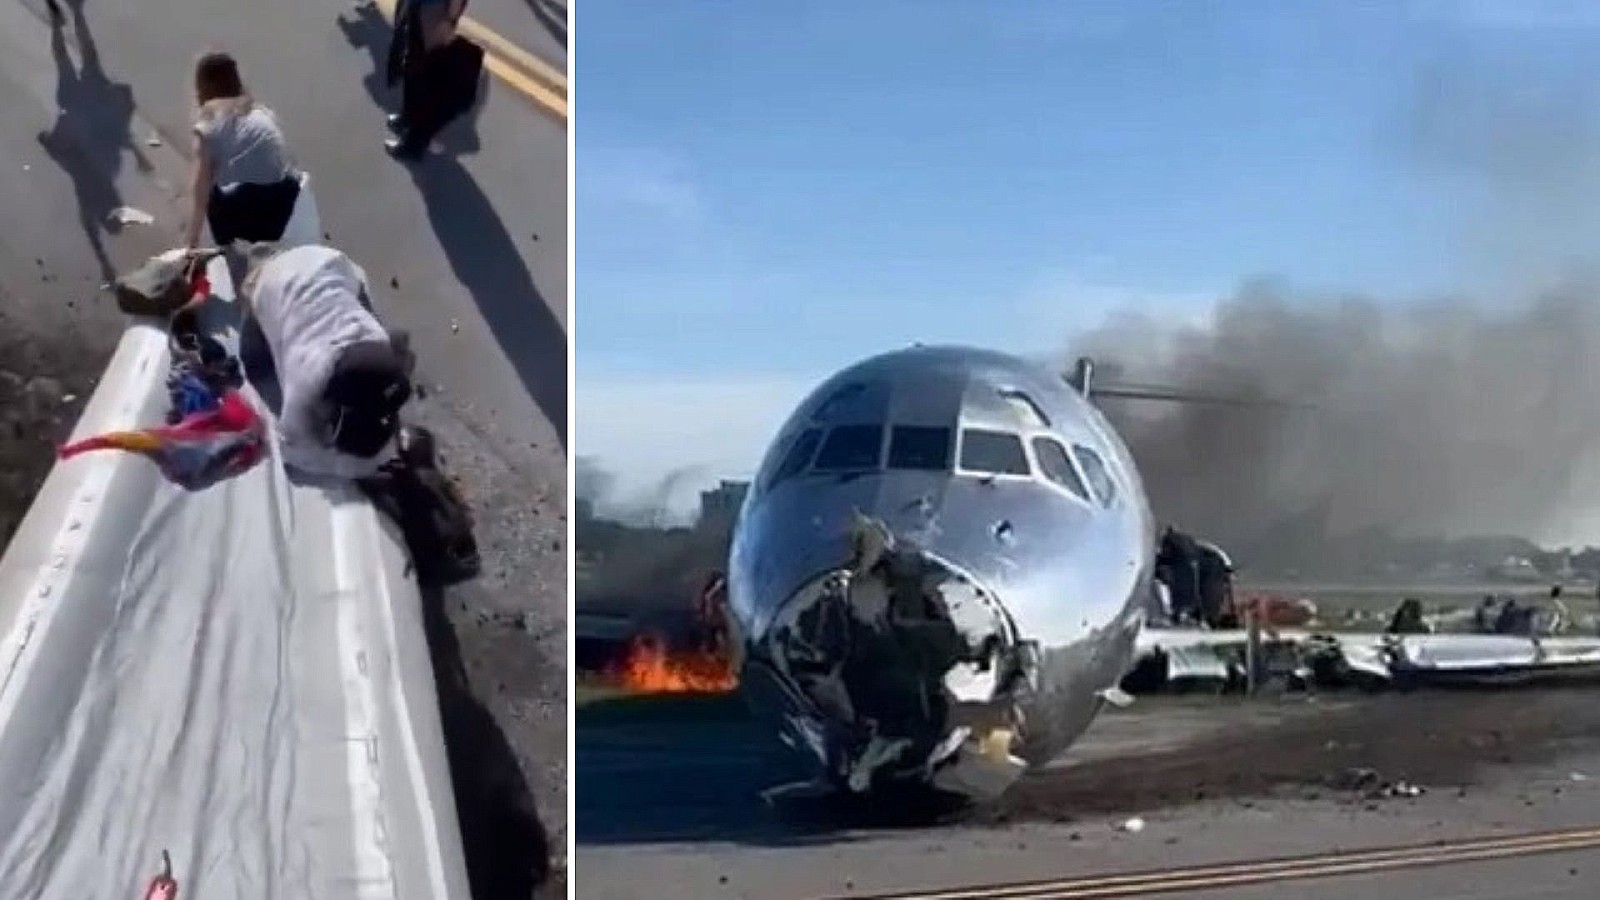 “Estamos vivos de milagro”: Hablan pasajeros de avión incendiado en aeropuerto de Miami